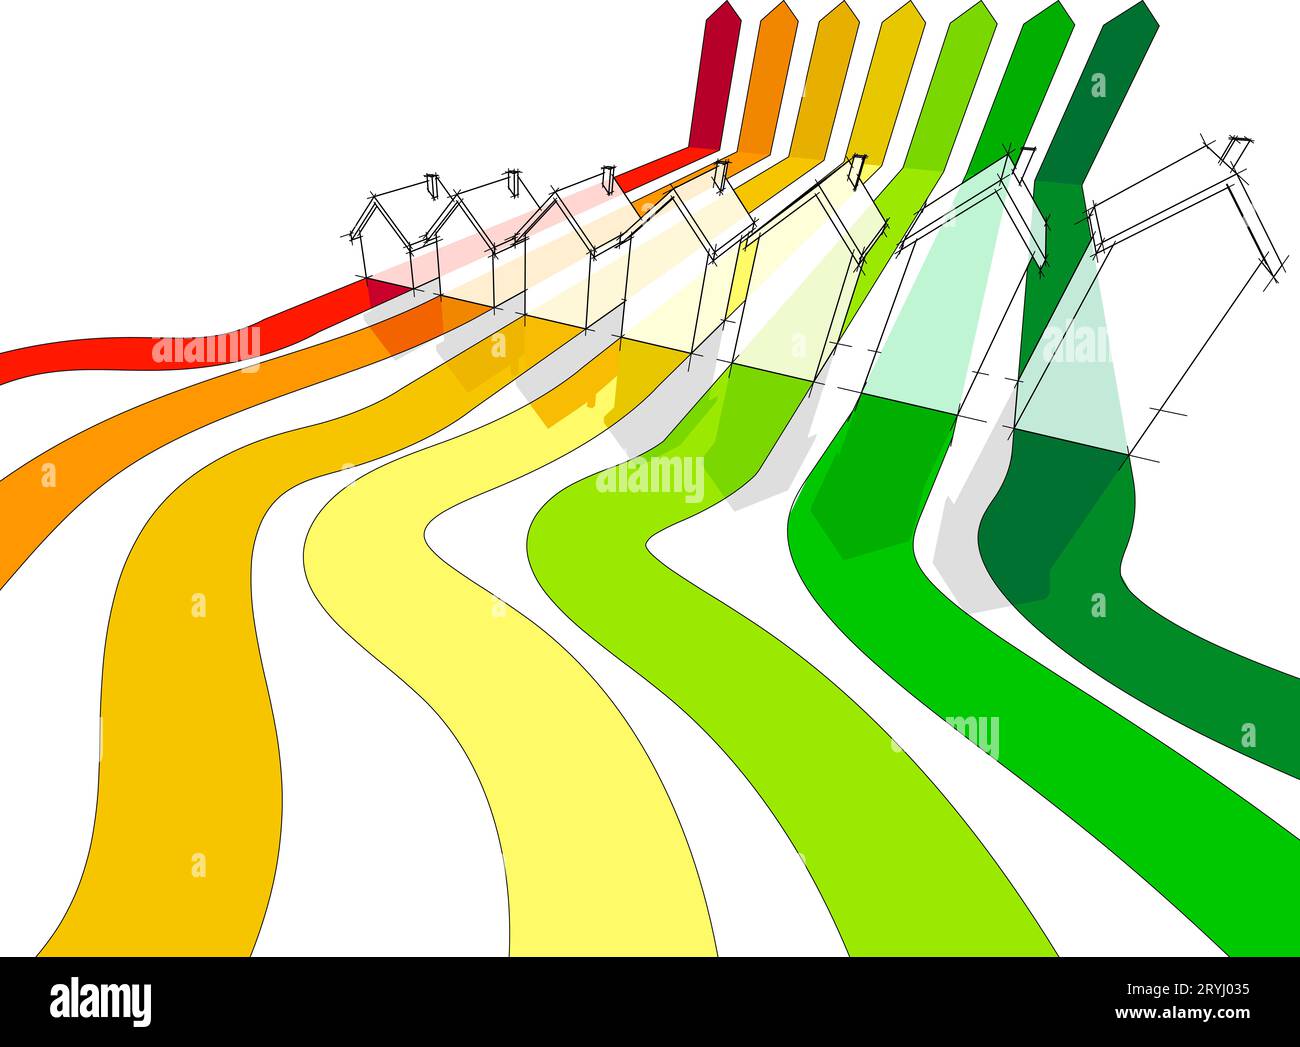 Sept maisons dans le diagramme d'évaluation énergétique Banque D'Images